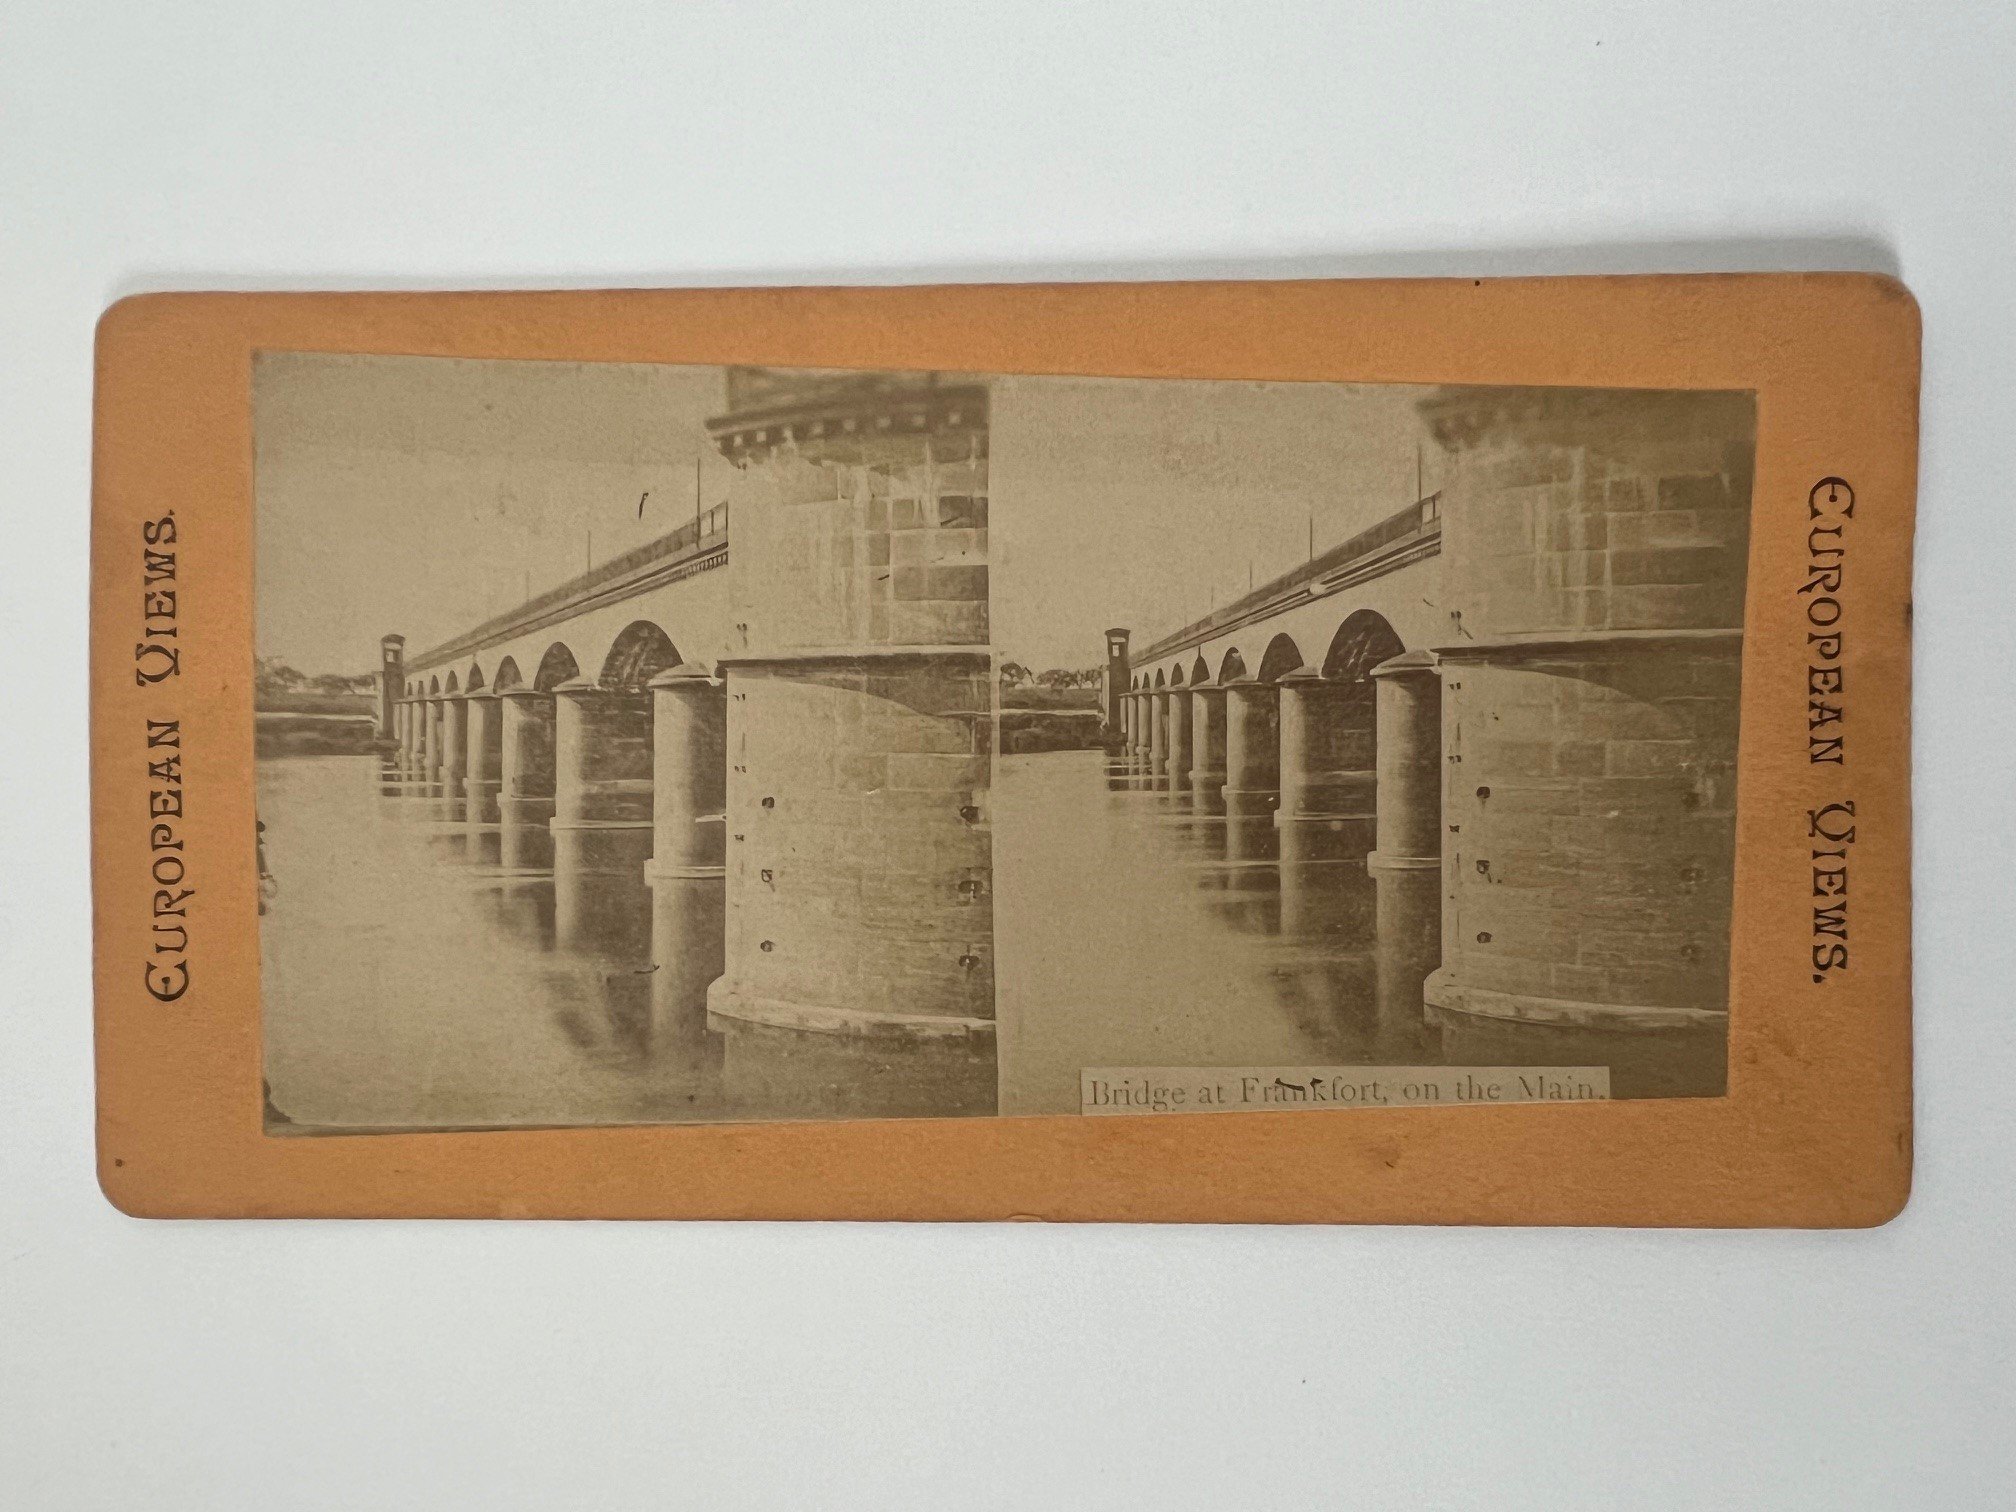 Stereobild, Unbekannter Fotograf, Frankfurt, Bridge at Frankfort, on the Main, ca. 1883. (Taunus-Rhein-Main - Regionalgeschichtliche Sammlung Dr. Stefan Naas CC BY-NC-SA)